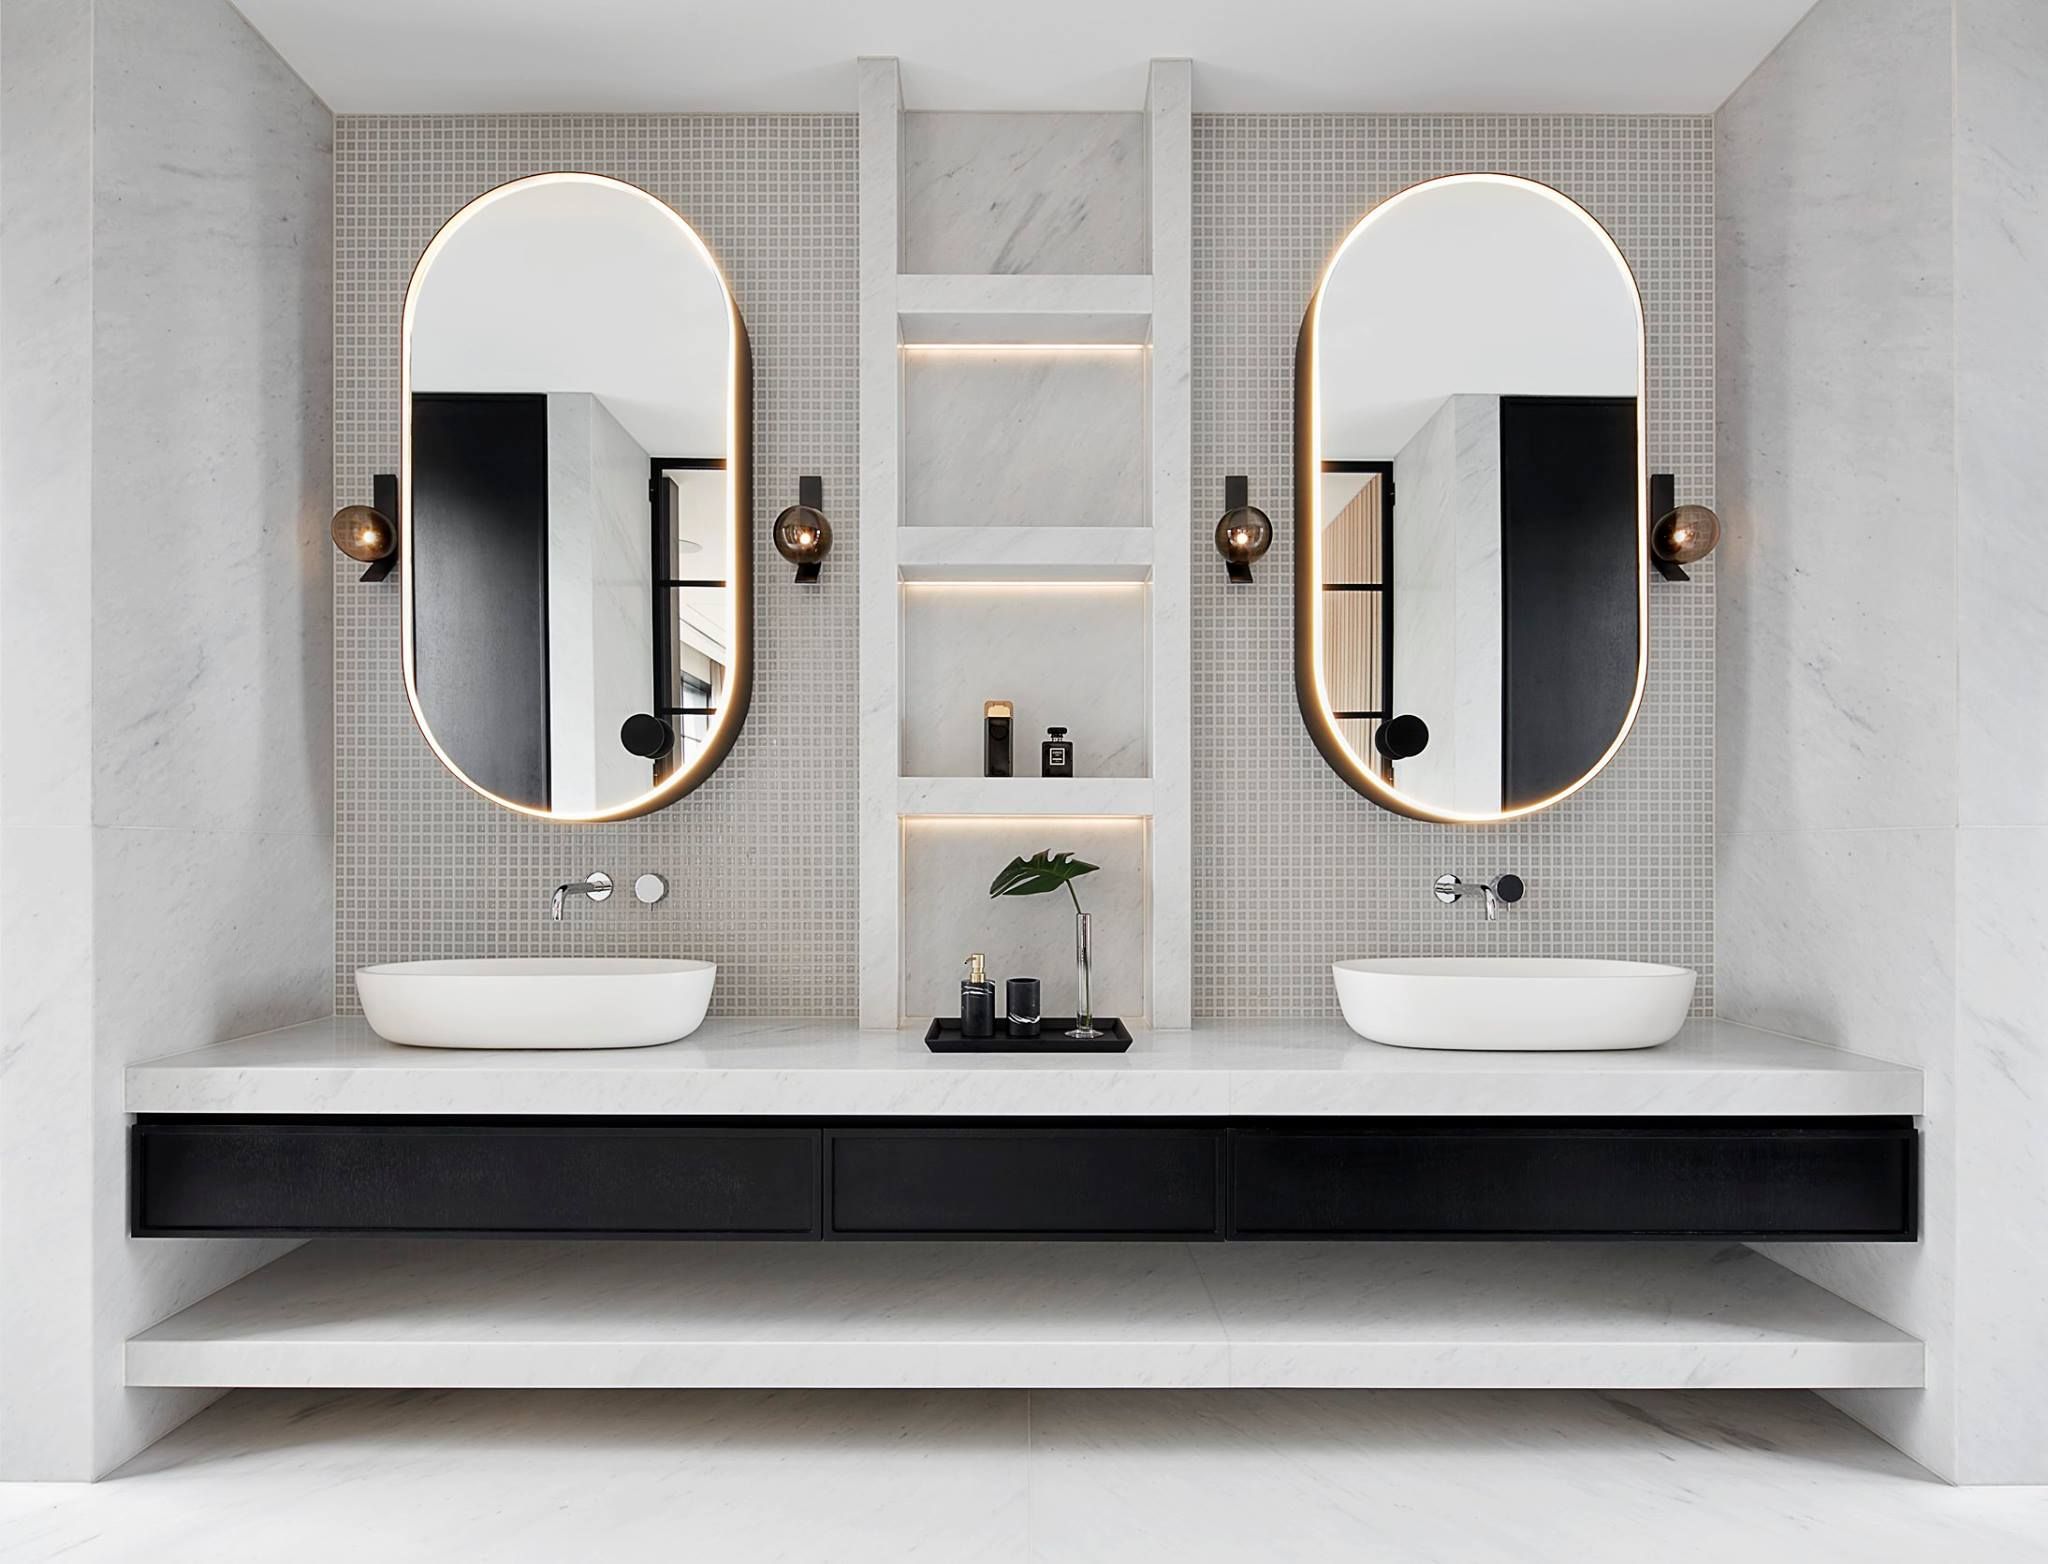 Modernt badrum med snygga spegelskåp, badrumslampor och mosaik.